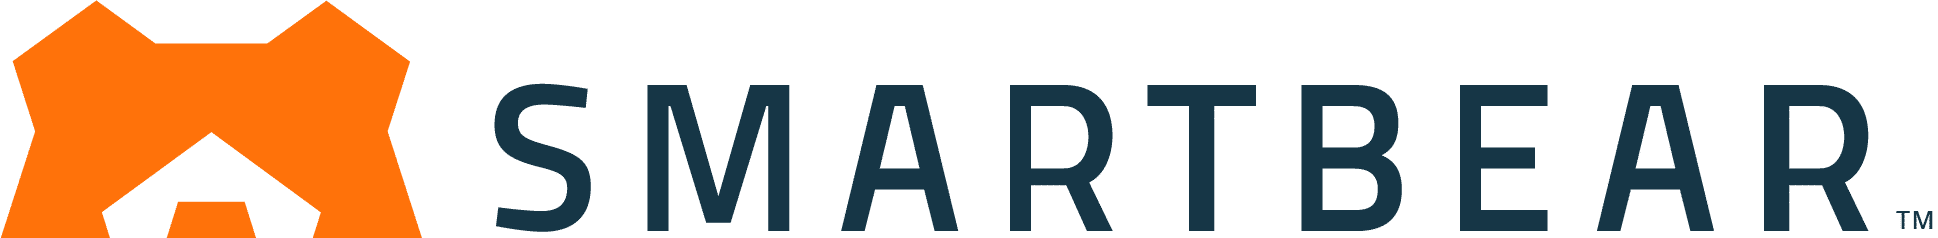 Smartbear logo